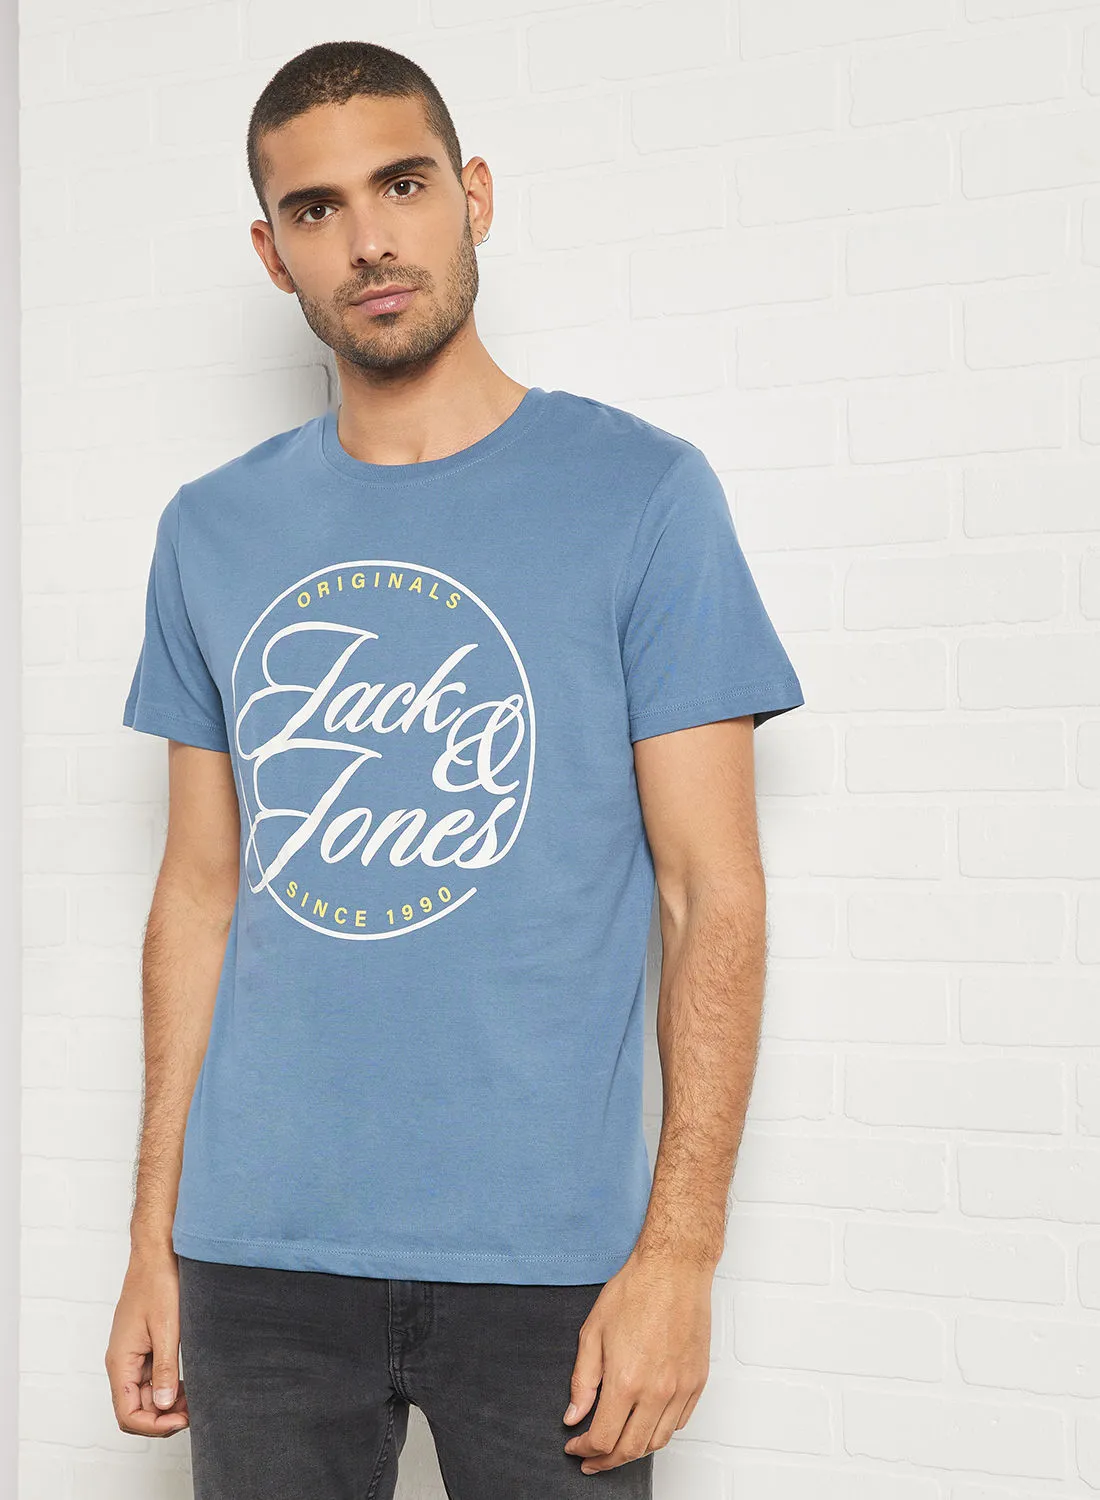 JACK & JONES Wordmark Print T-Shirt